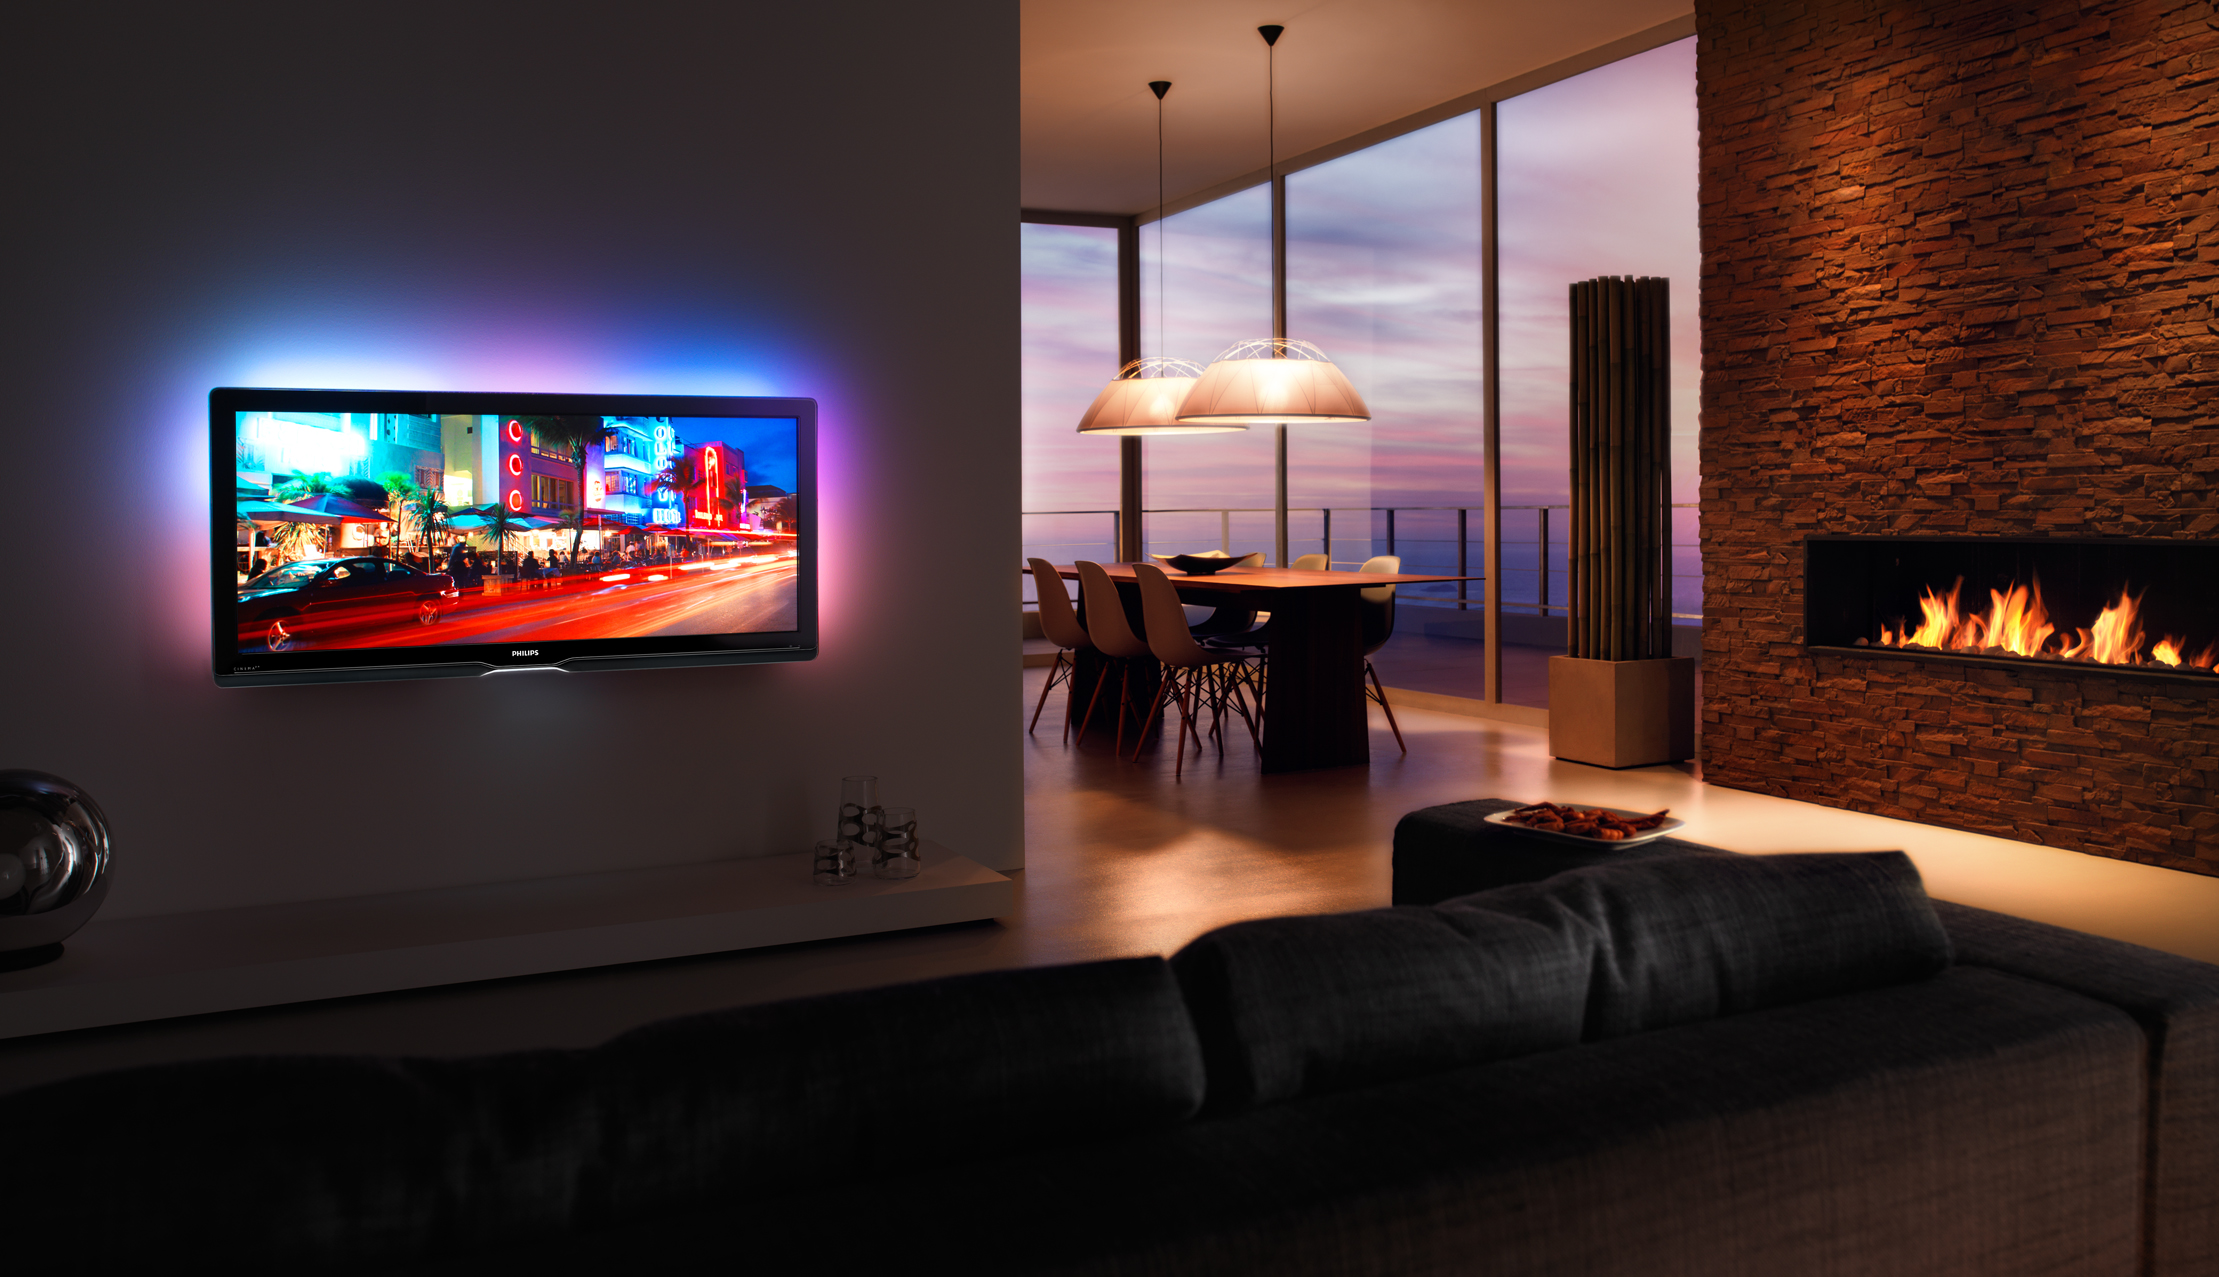 Телевизоры см 16. Телевизор Philips Cinema 21 9 TV. Филипс плазма с подсветкой. Телевизор в интерьере. Плазменный телевизор на стене.